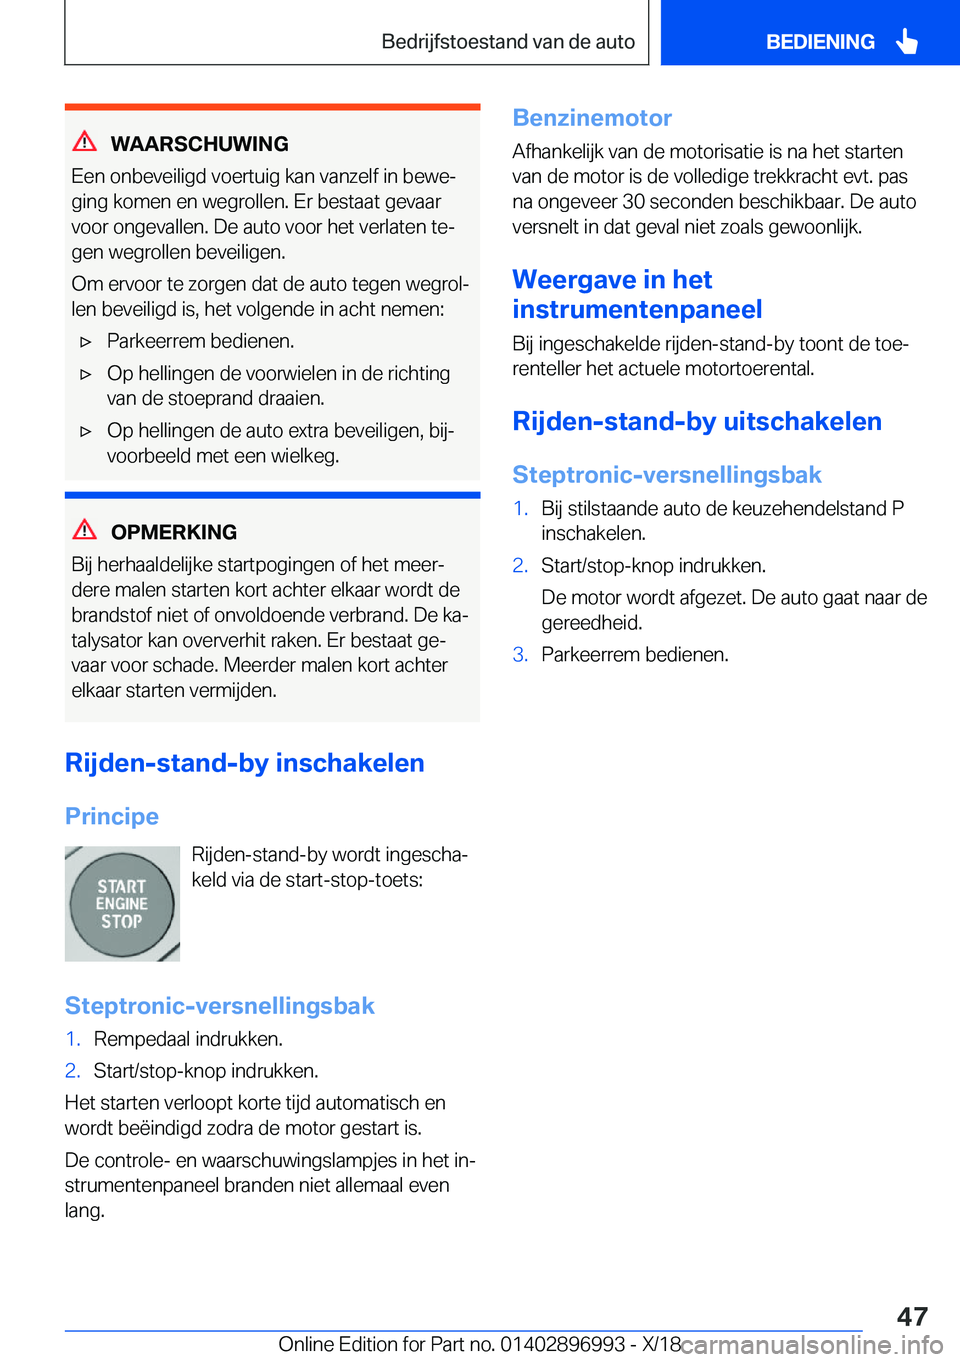 BMW Z4 2019  Instructieboekjes (in Dutch) �W�A�A�R�S�C�H�U�W�I�N�G
�E�e�n��o�n�b�e�v�e�i�l�i�g�d��v�o�e�r�t�u�i�g��k�a�n��v�a�n�z�e�l�f��i�n��b�e�w�ej �g�i�n�g��k�o�m�e�n��e�n��w�e�g�r�o�l�l�e�n�.��E�r��b�e�s�t�a�a�t��g�e�v�a�a�r